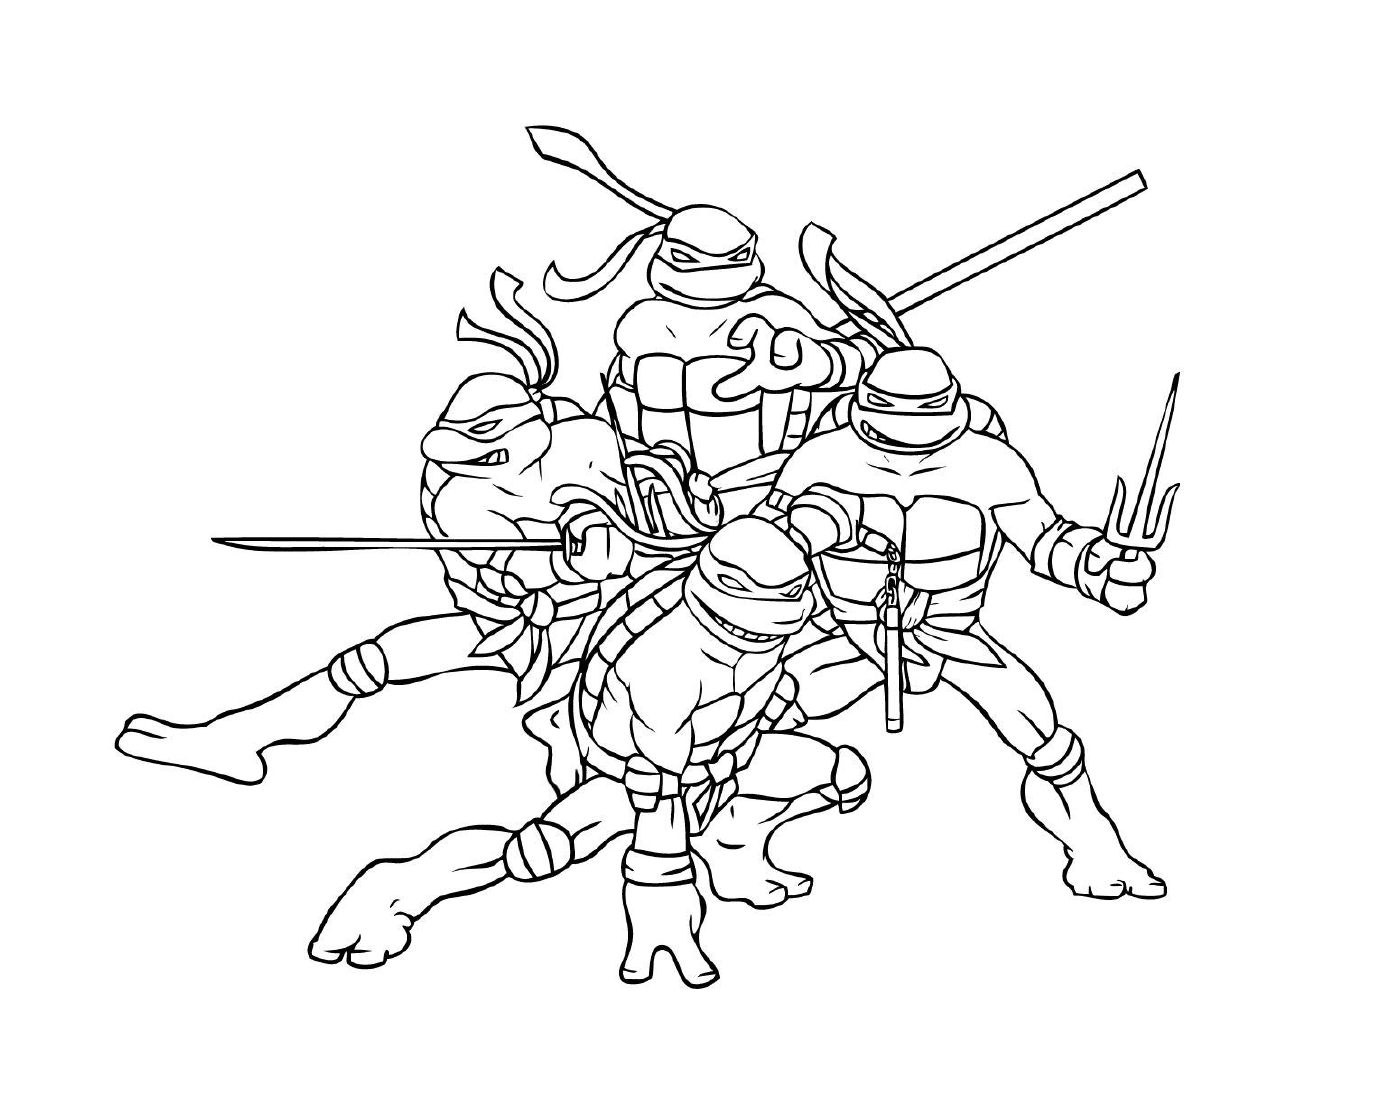  Grupo de tartarugas ninja soldadas 